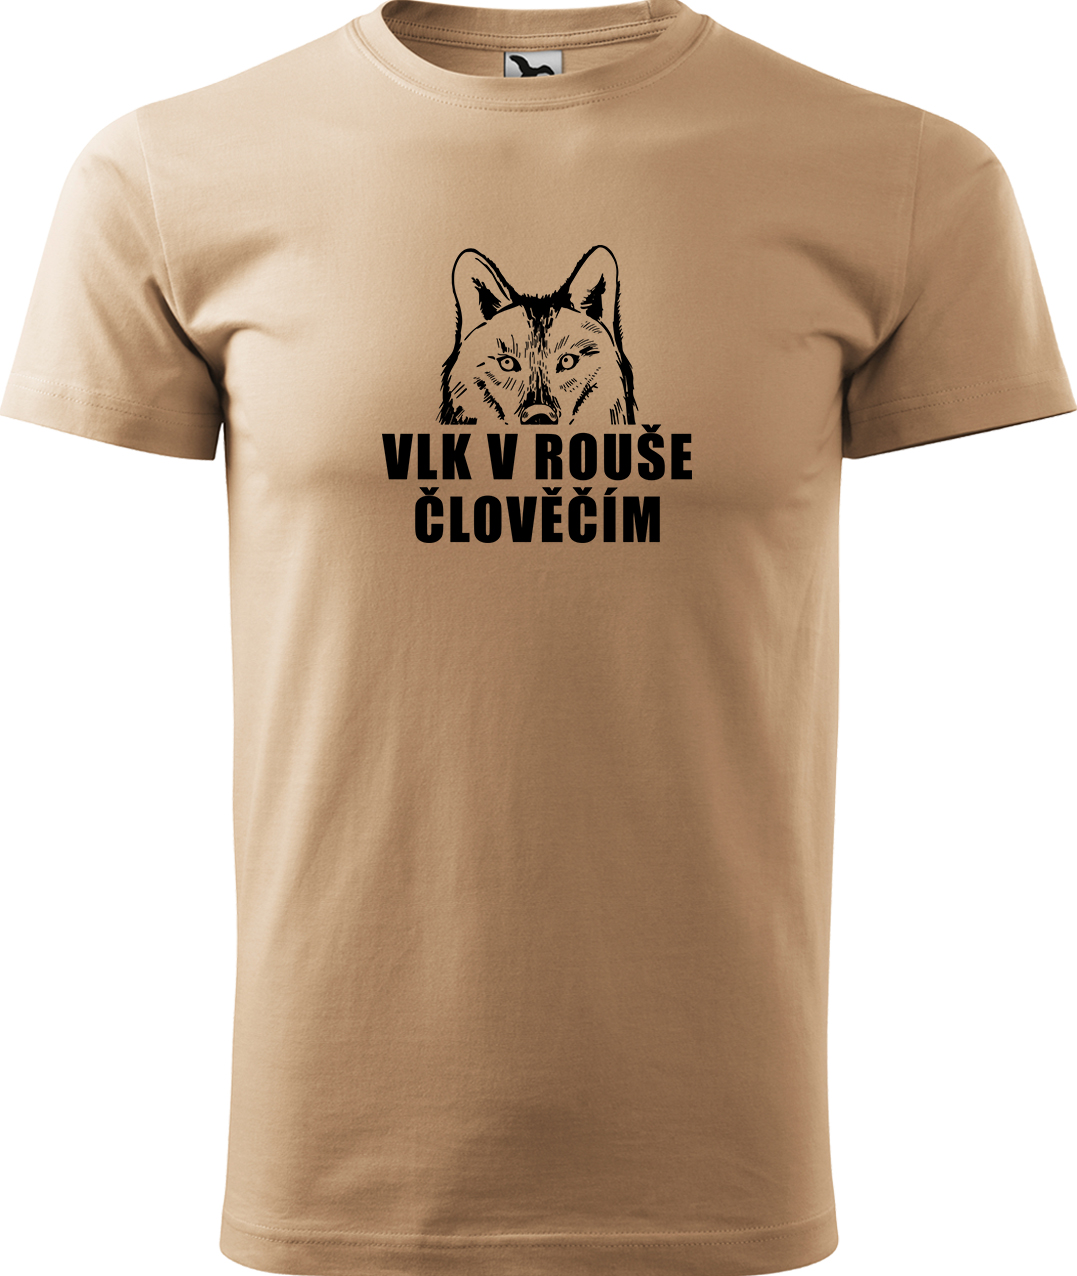 Pánské tričko s vlkem - Vlk v rouše člověčím Velikost: M, Barva: Písková (08), Střih: pánský